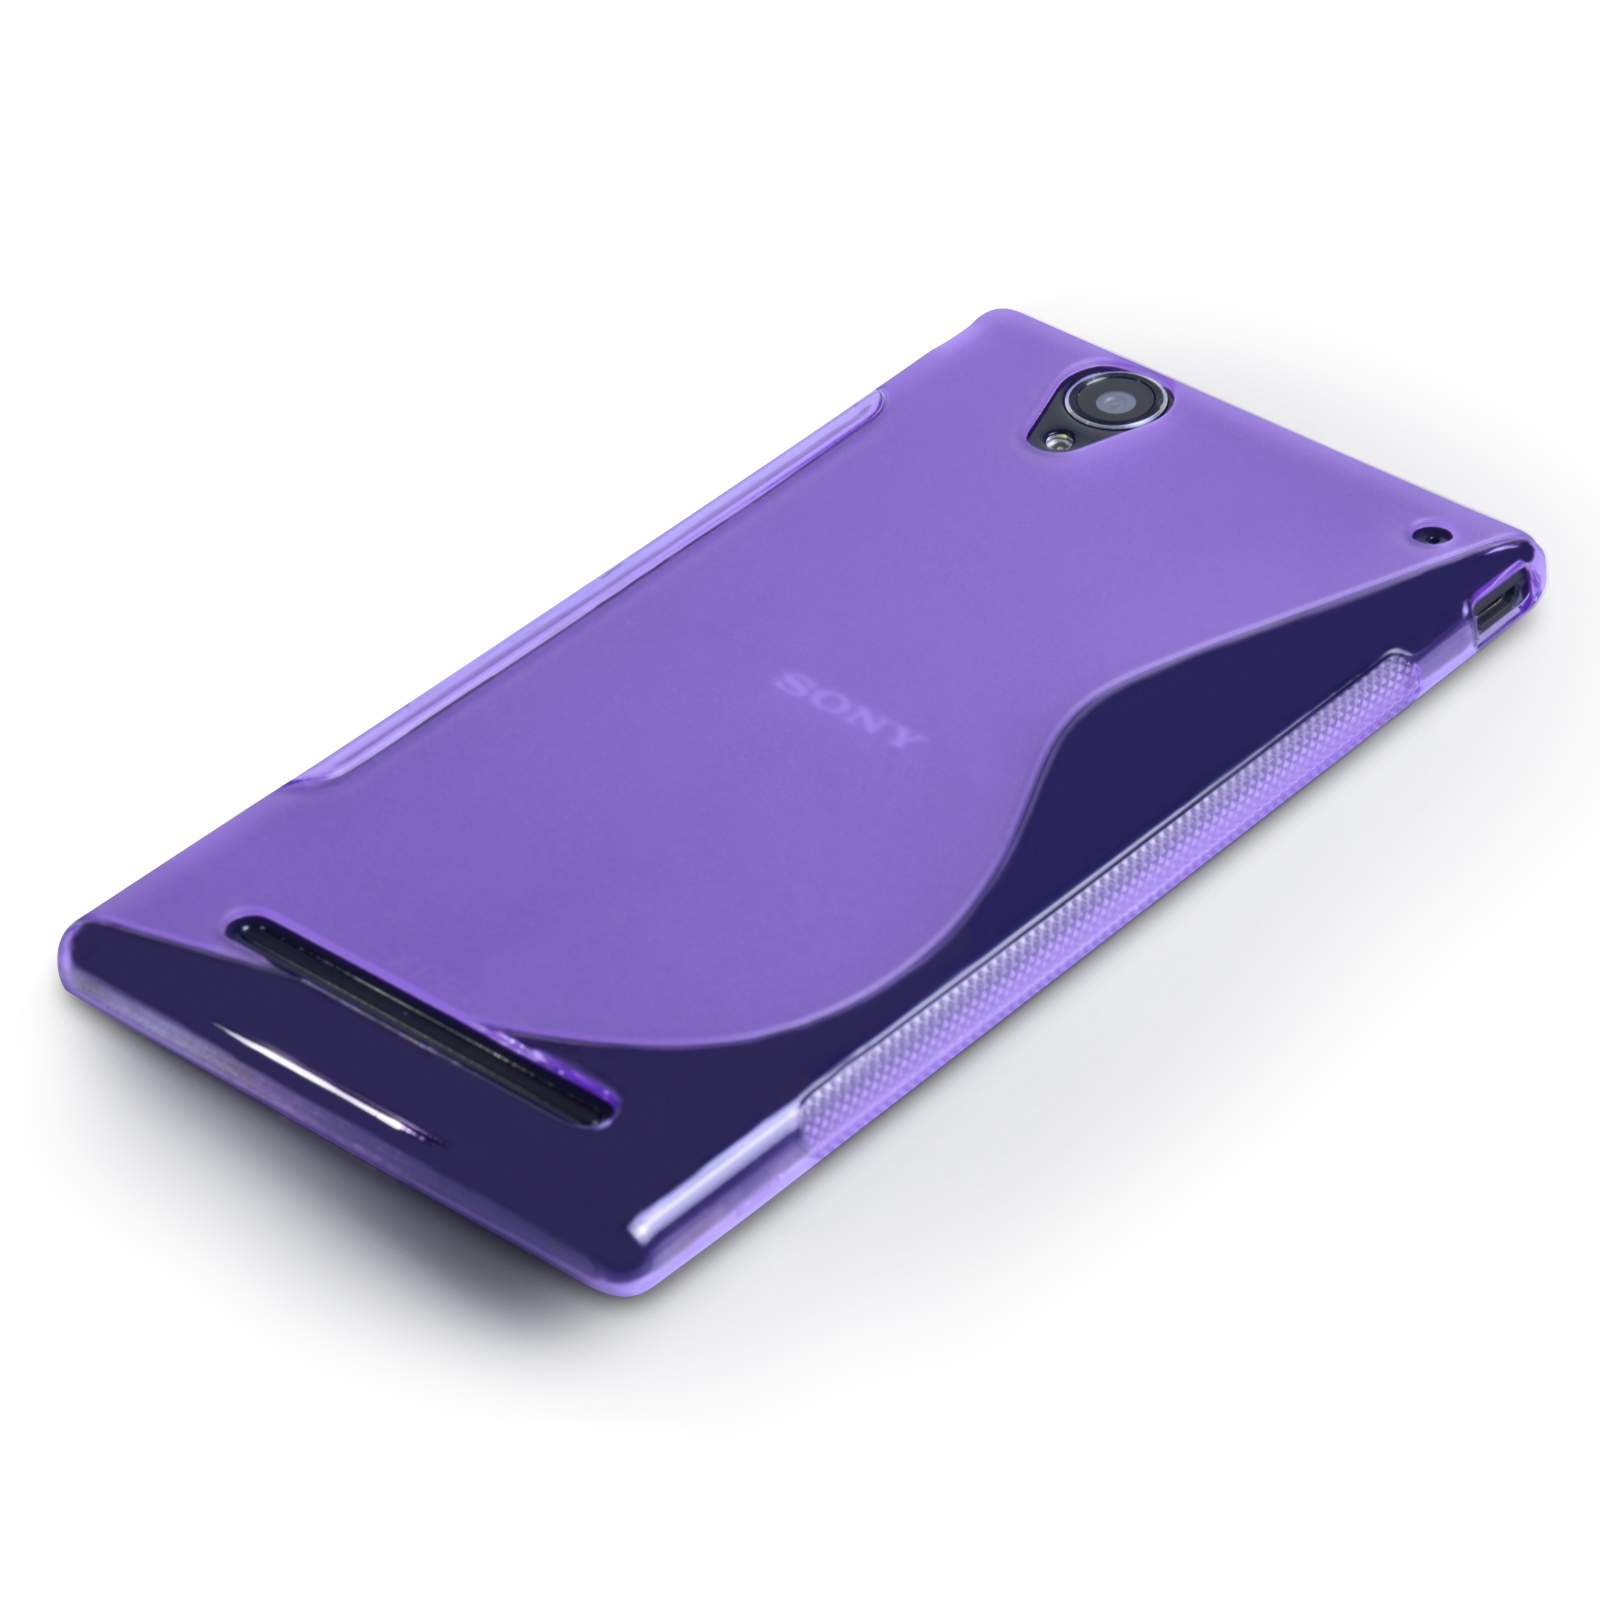 Caseflex Sony Xperia T2 Ultra Silicone Gel S-Line Case - Purple